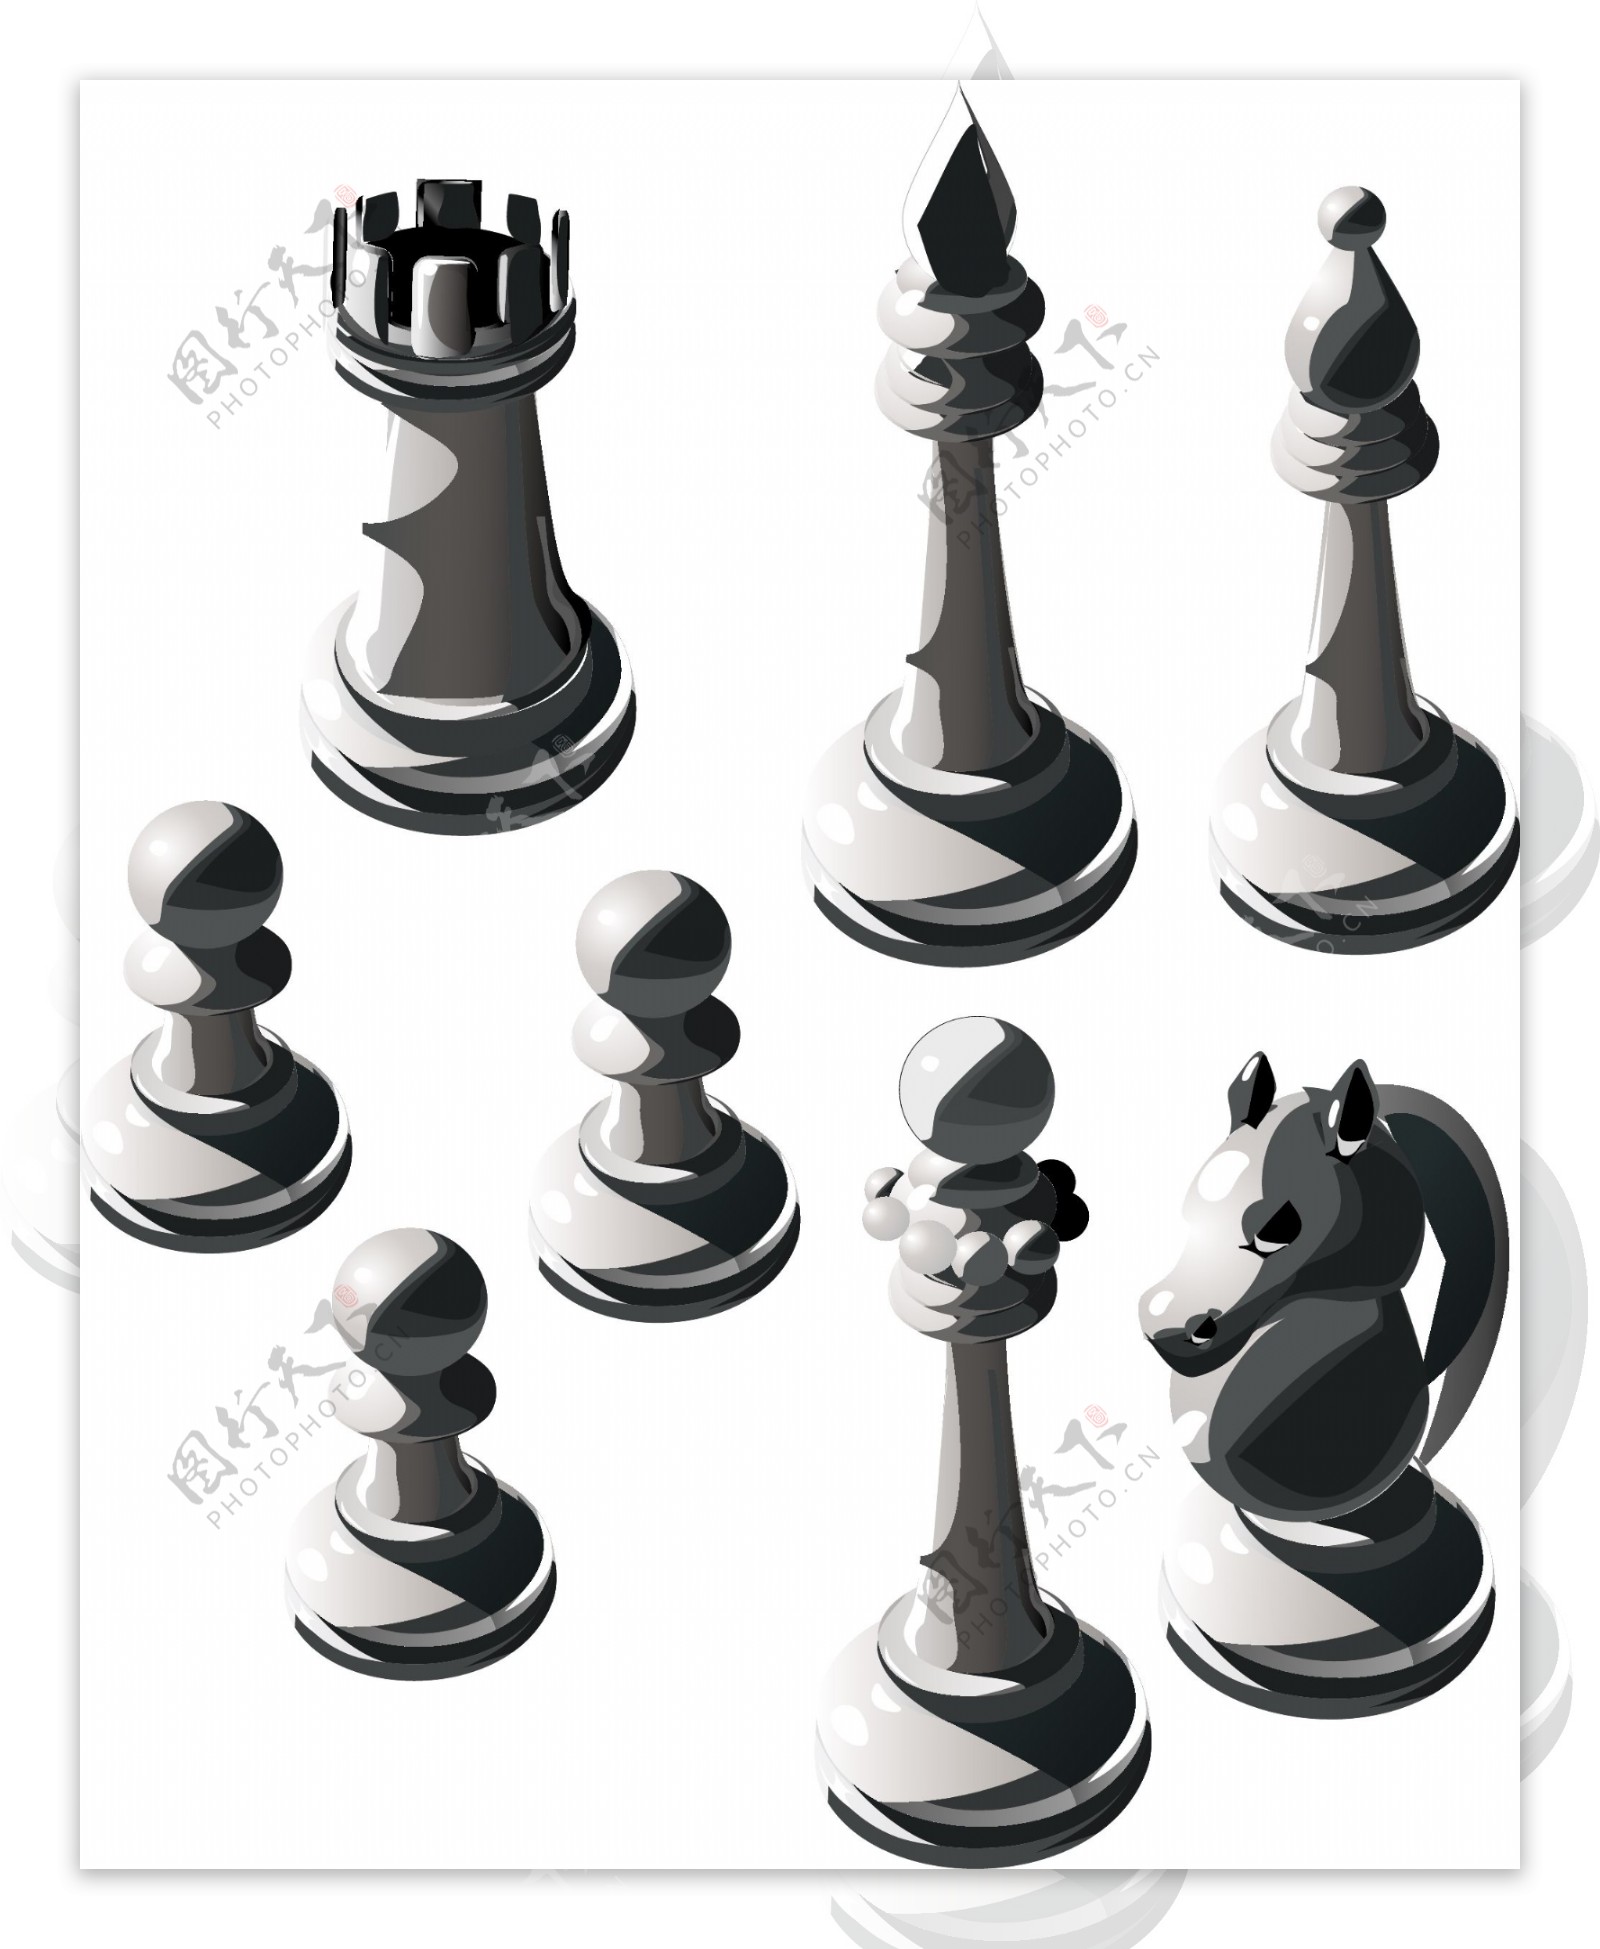 国际象棋矢量素材